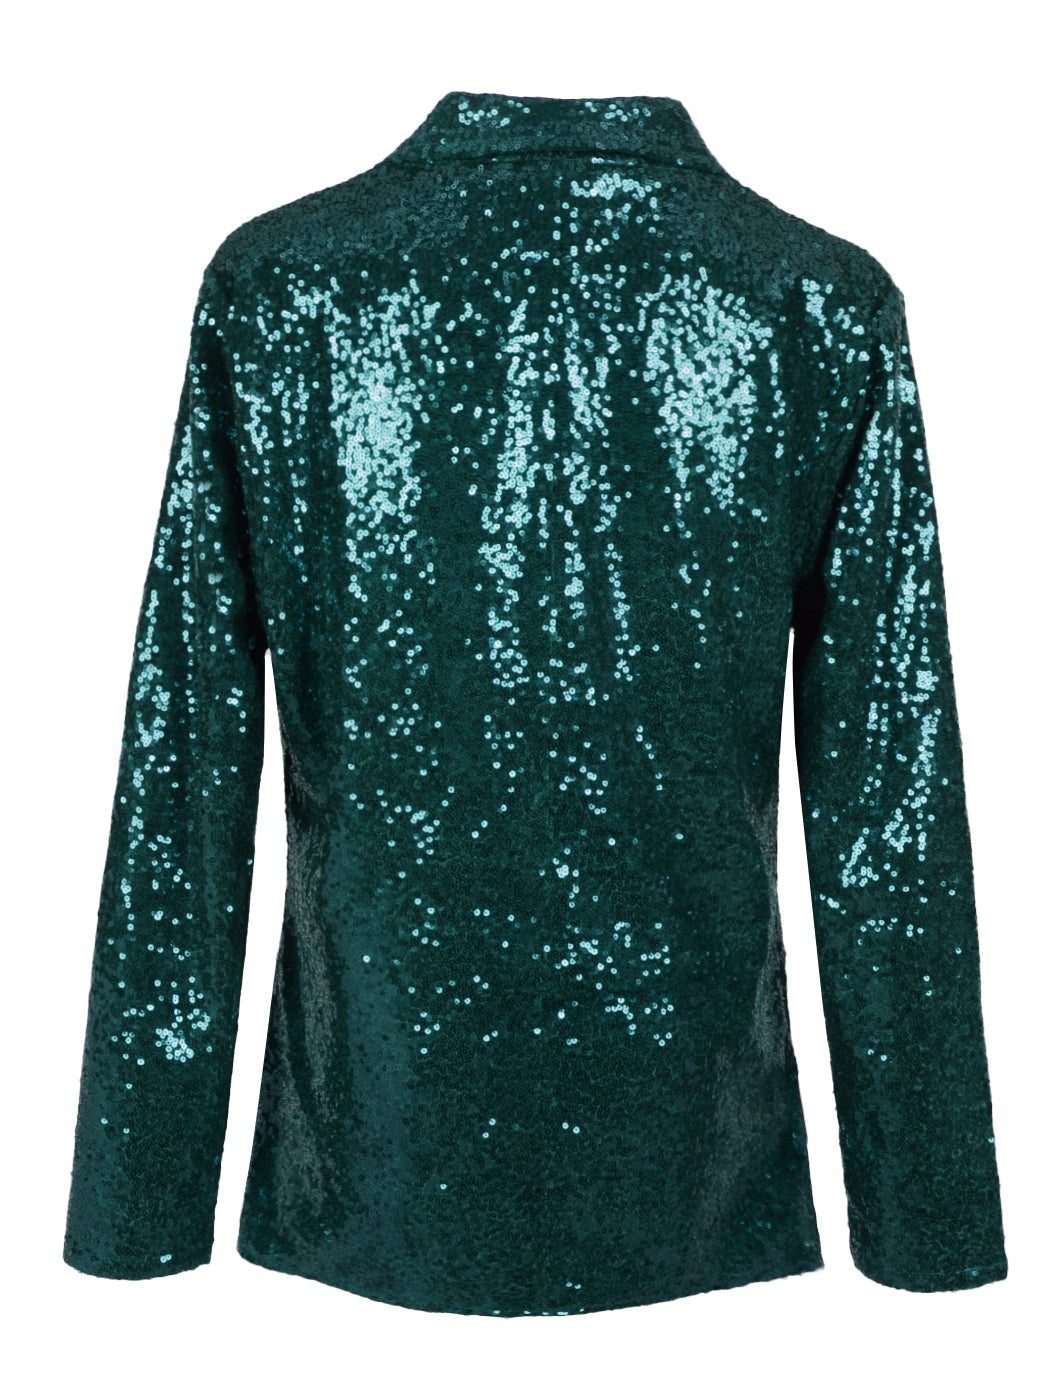 Evening Sparkle Sequin Blazer Jacket